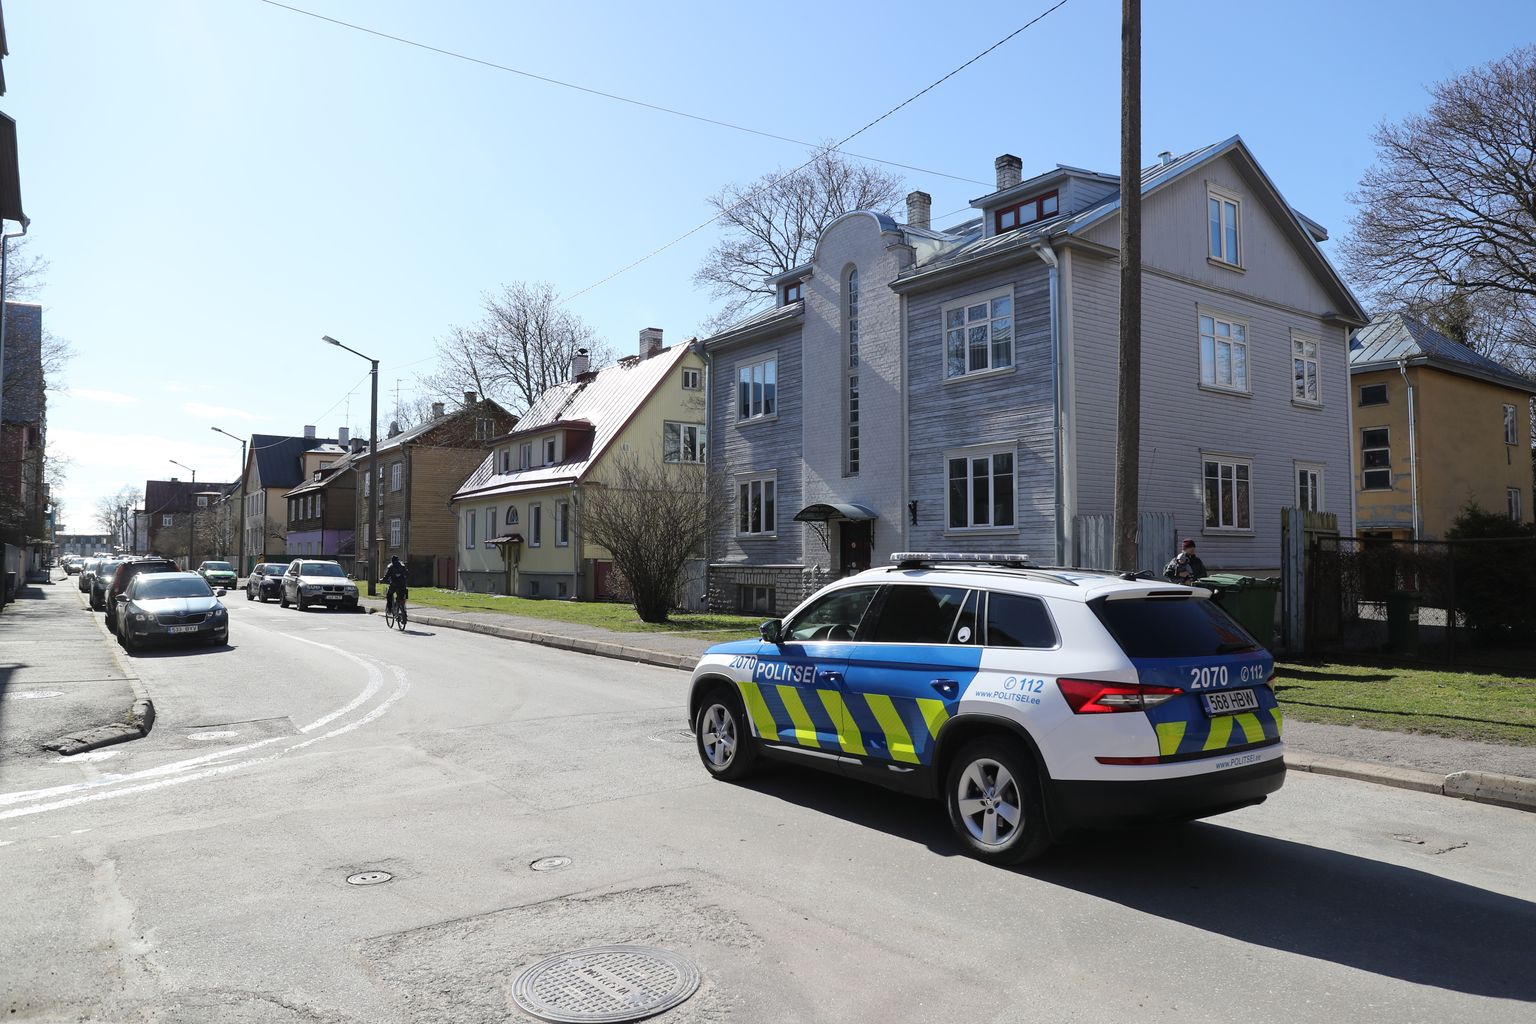 Politsei patrullimas Tallinnas Kungla tänaval, kus on peamiselt pisikesed kortermajad ja kokkuhoidev kogukond. Siiski panevad neid viimasel ajal muretsema Kalamajas uksi katsumas käivad võõrad.